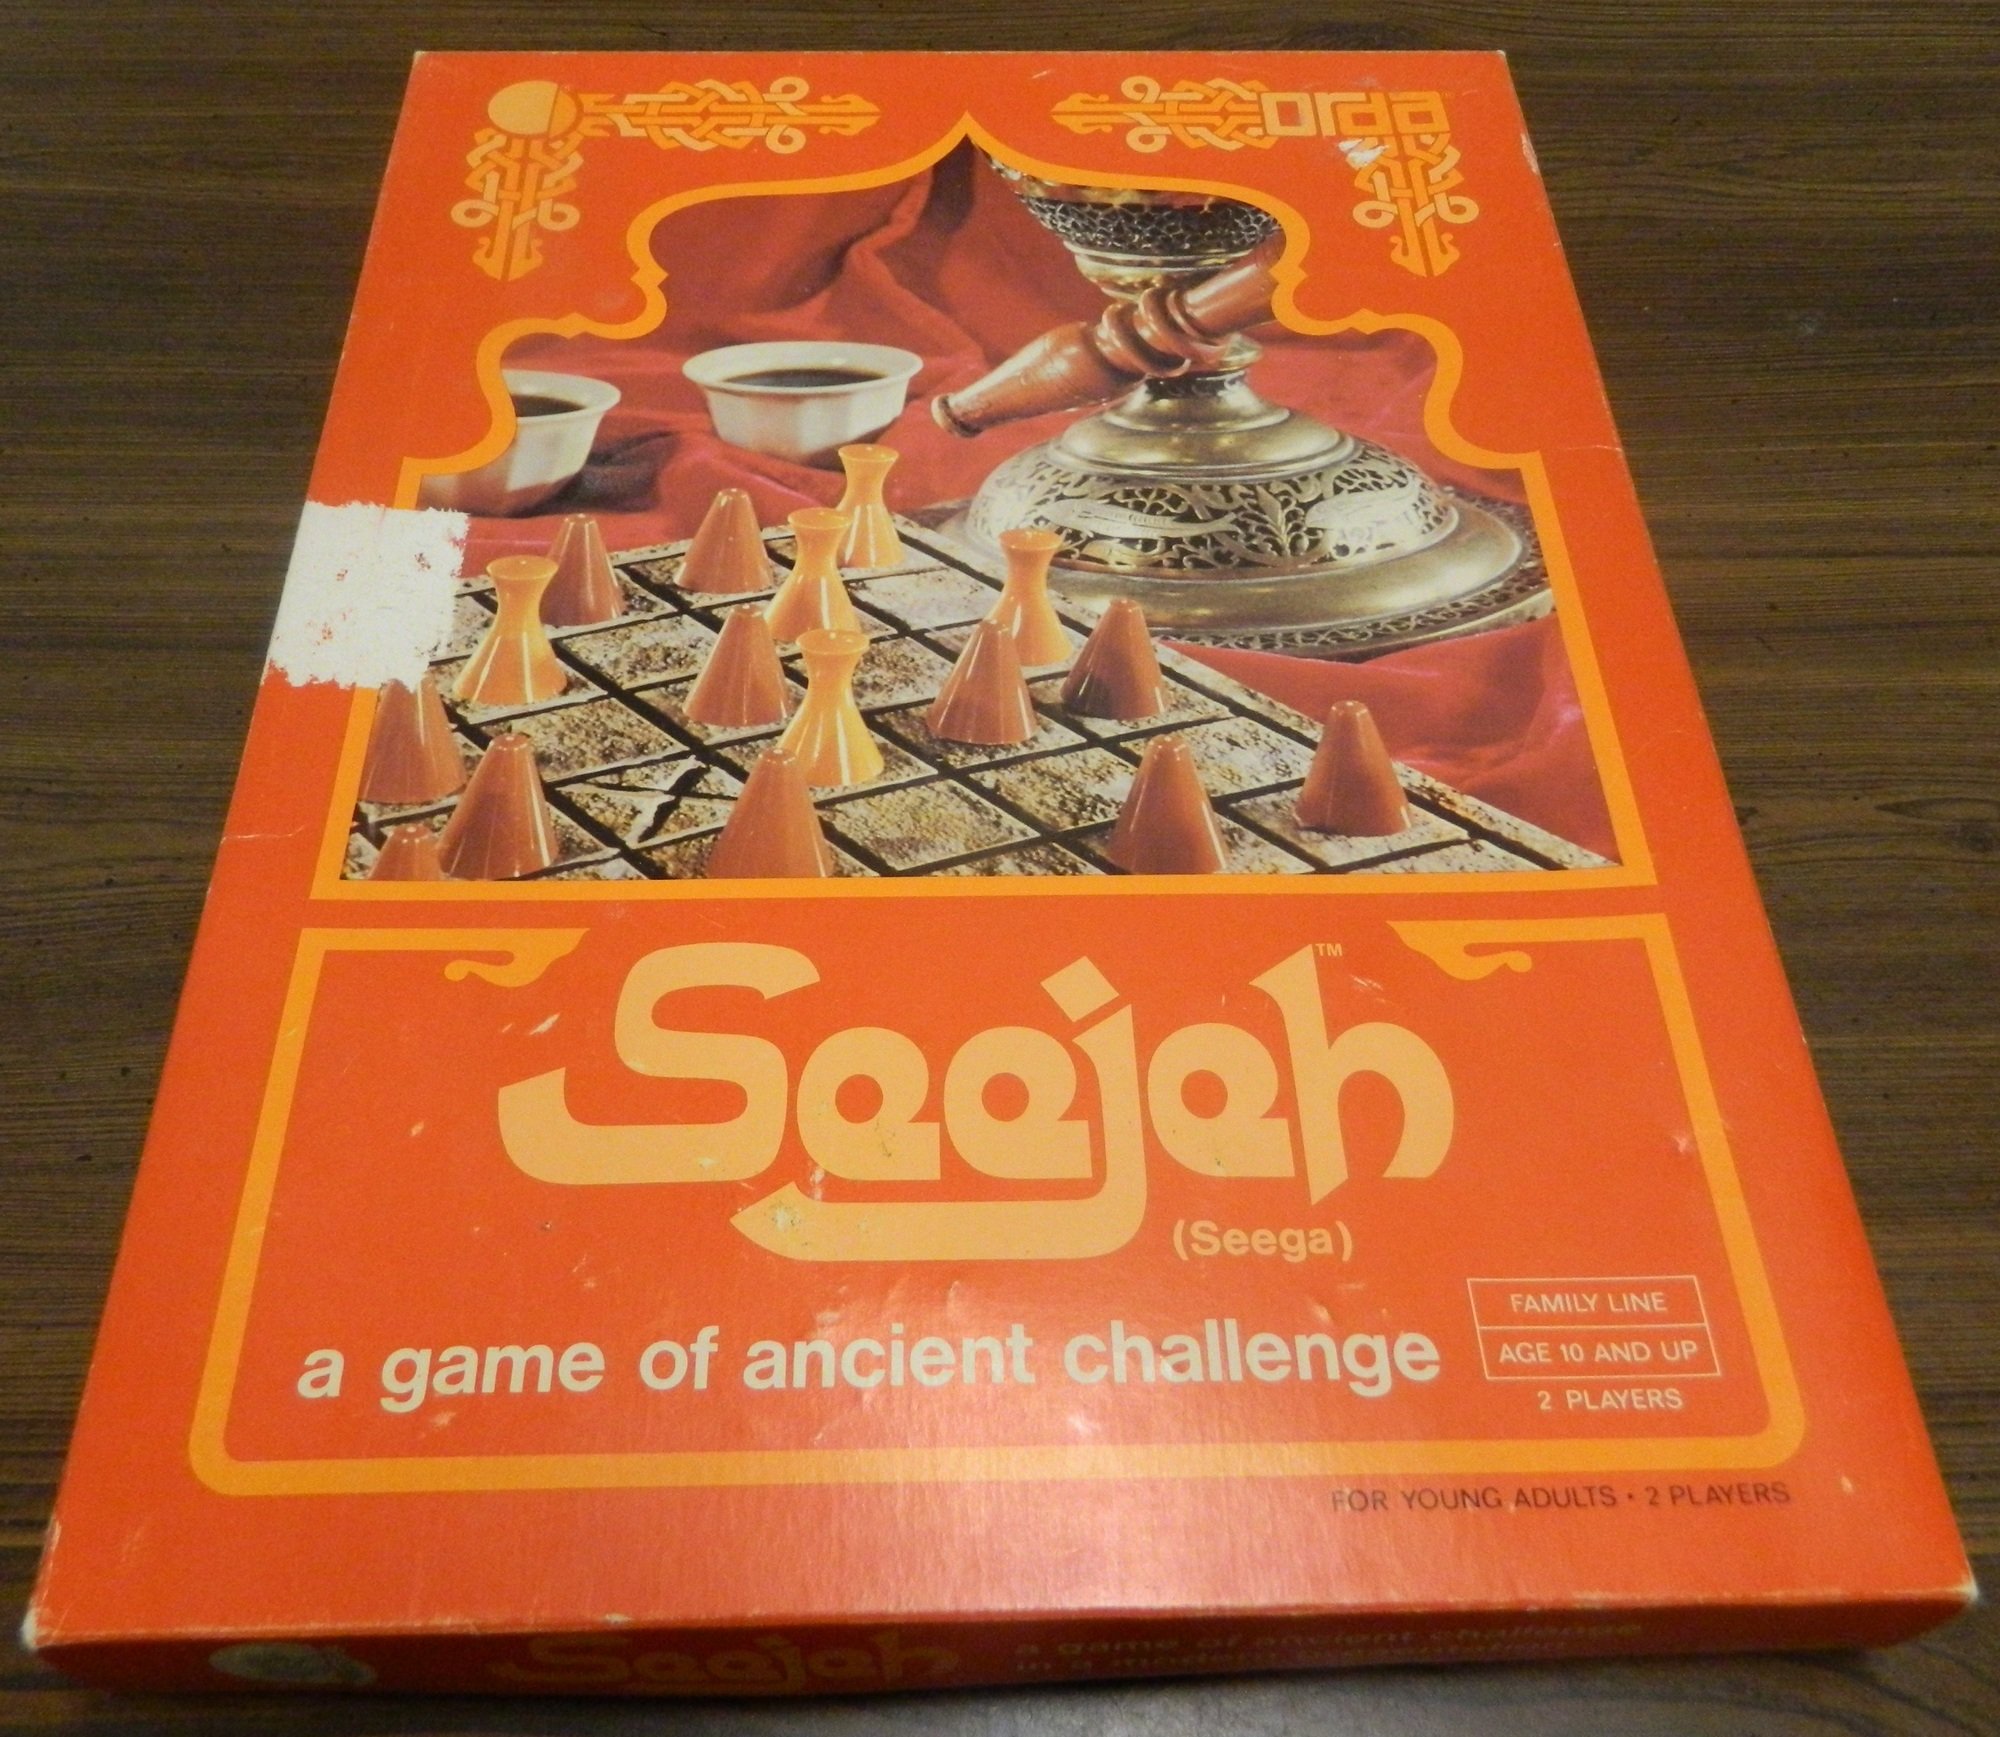 Seejeh (AKA Seega) Board Game Review and Rules